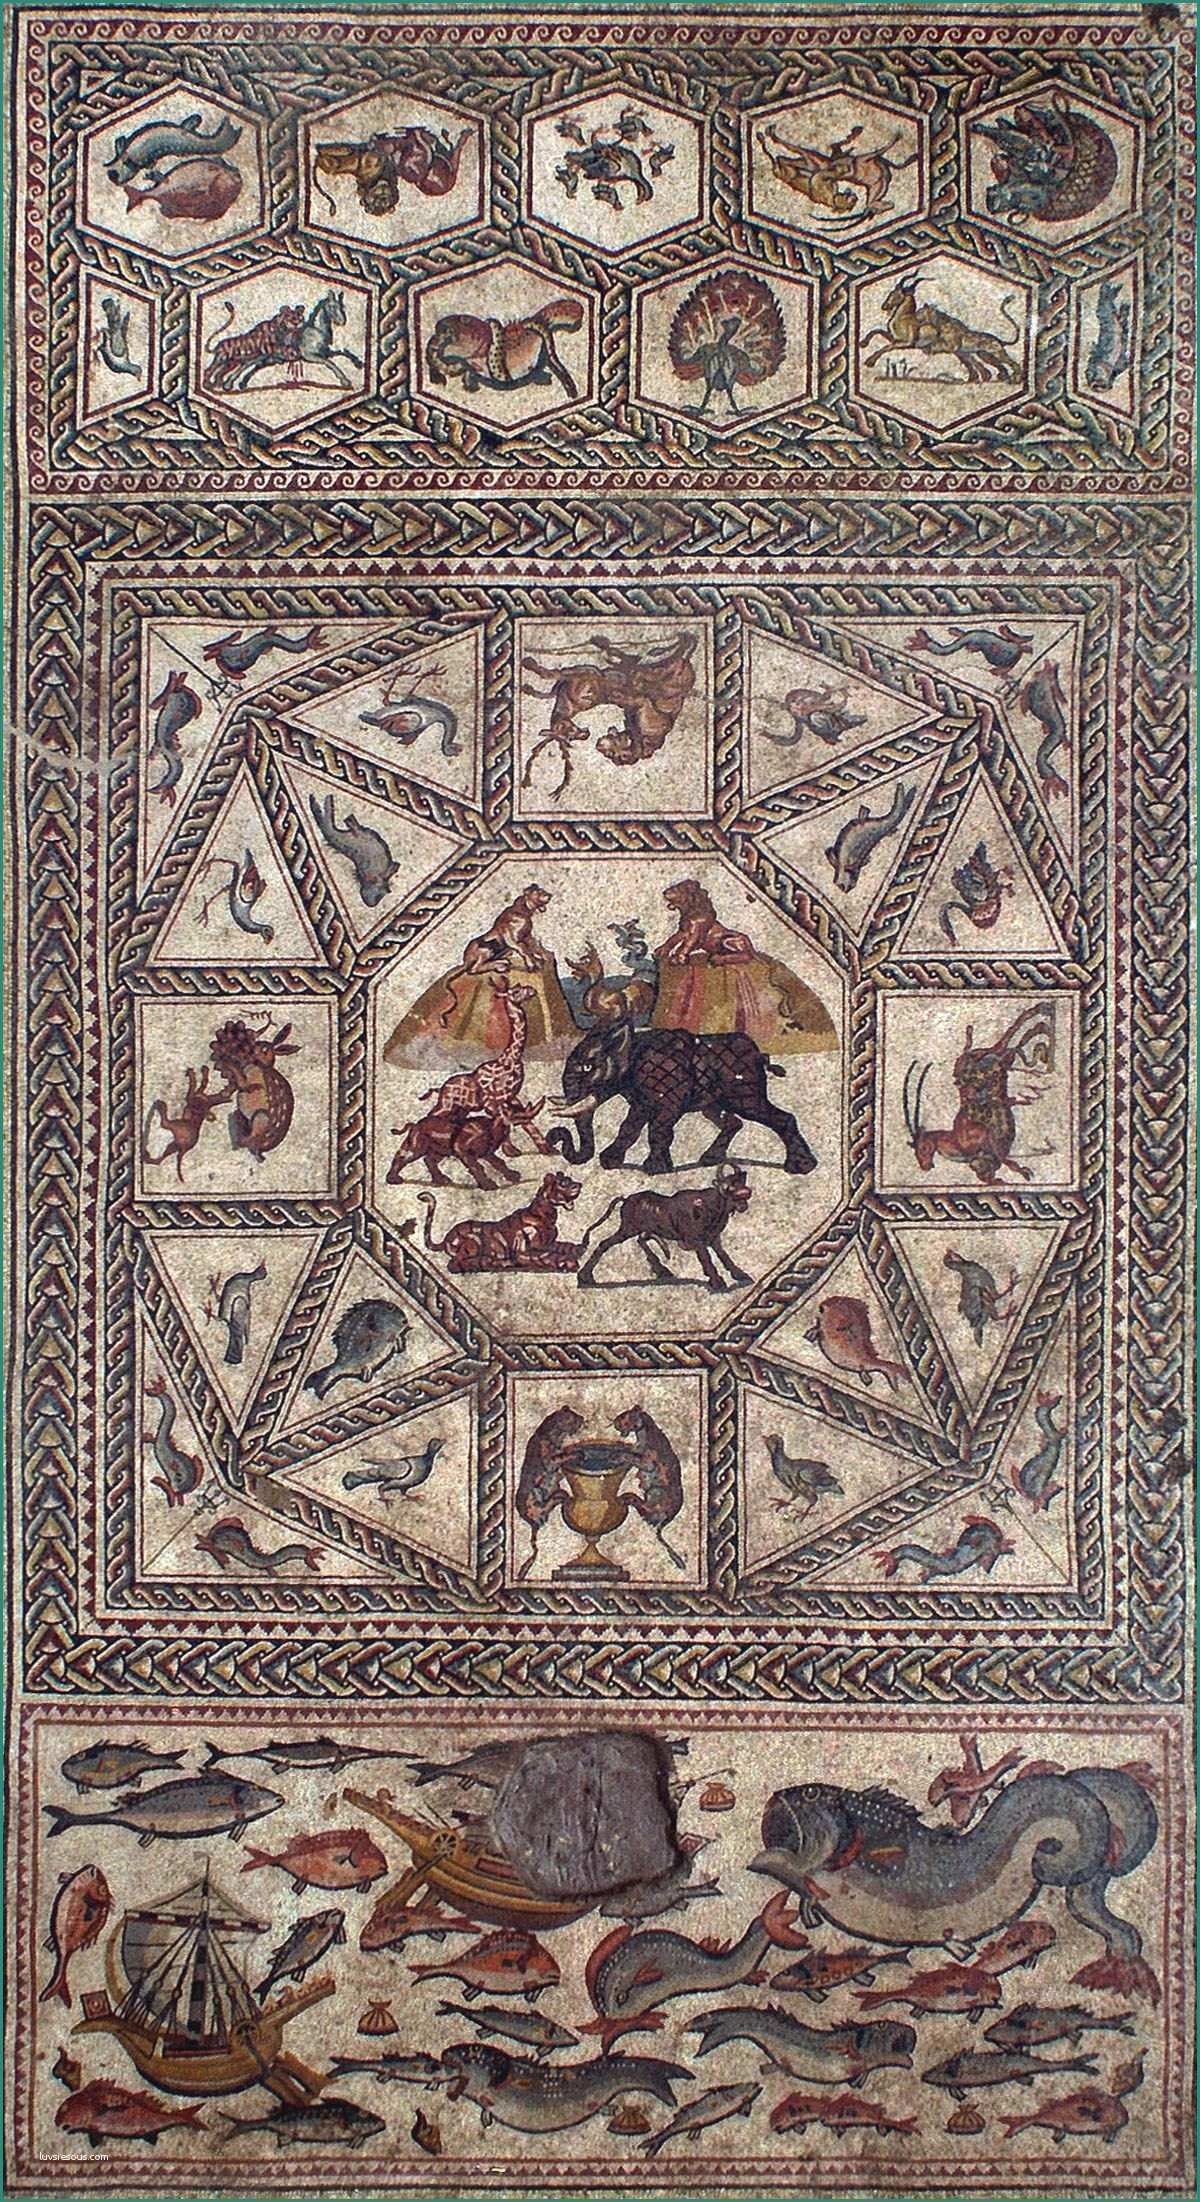 Lds Pannelli Decorativi E E Panel Of the Roman Lod Mosaic Circa 4th Century Ad which